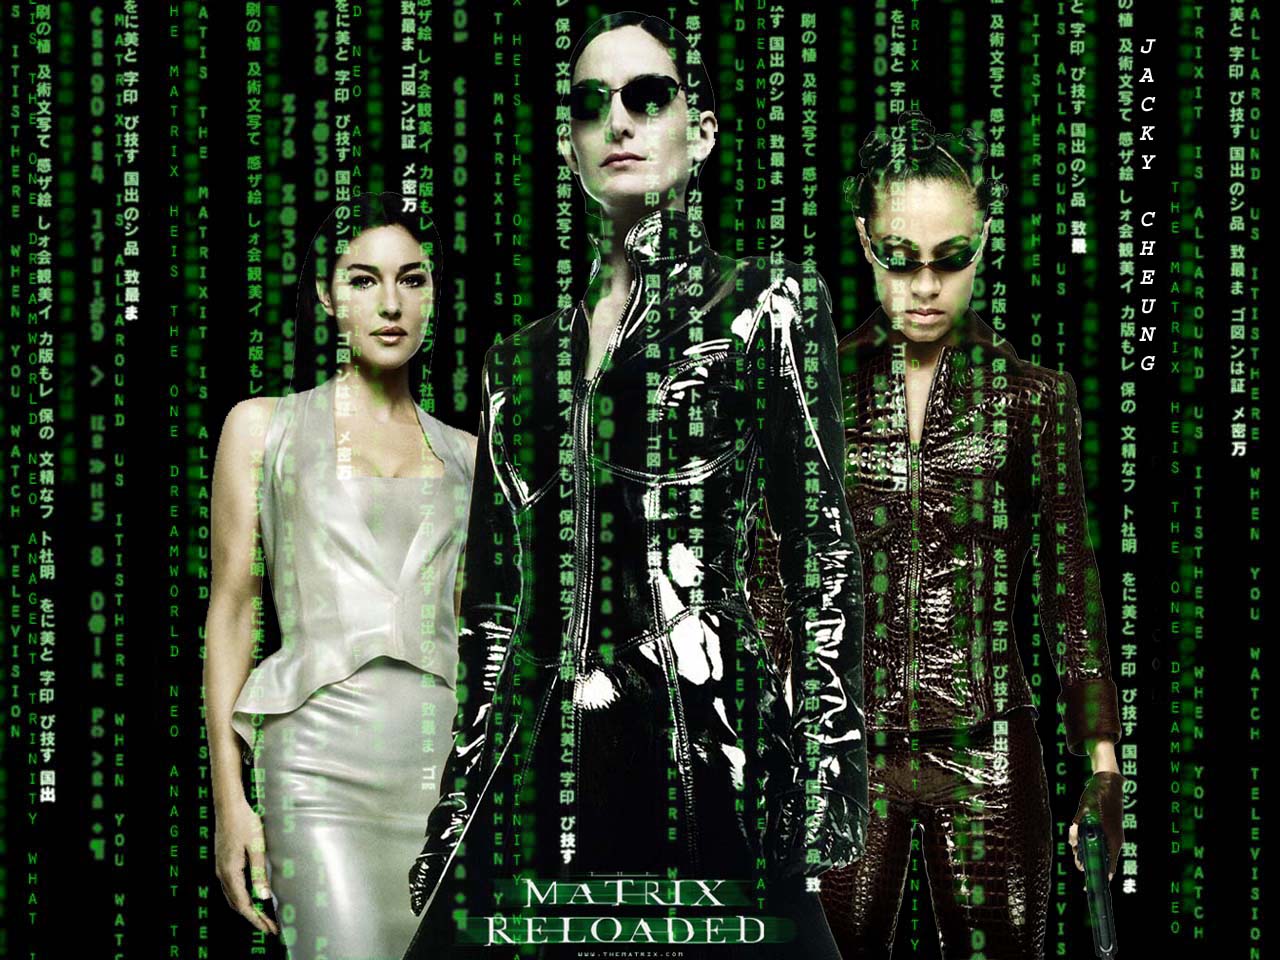 Fond d'ecran Les femmes Matrix